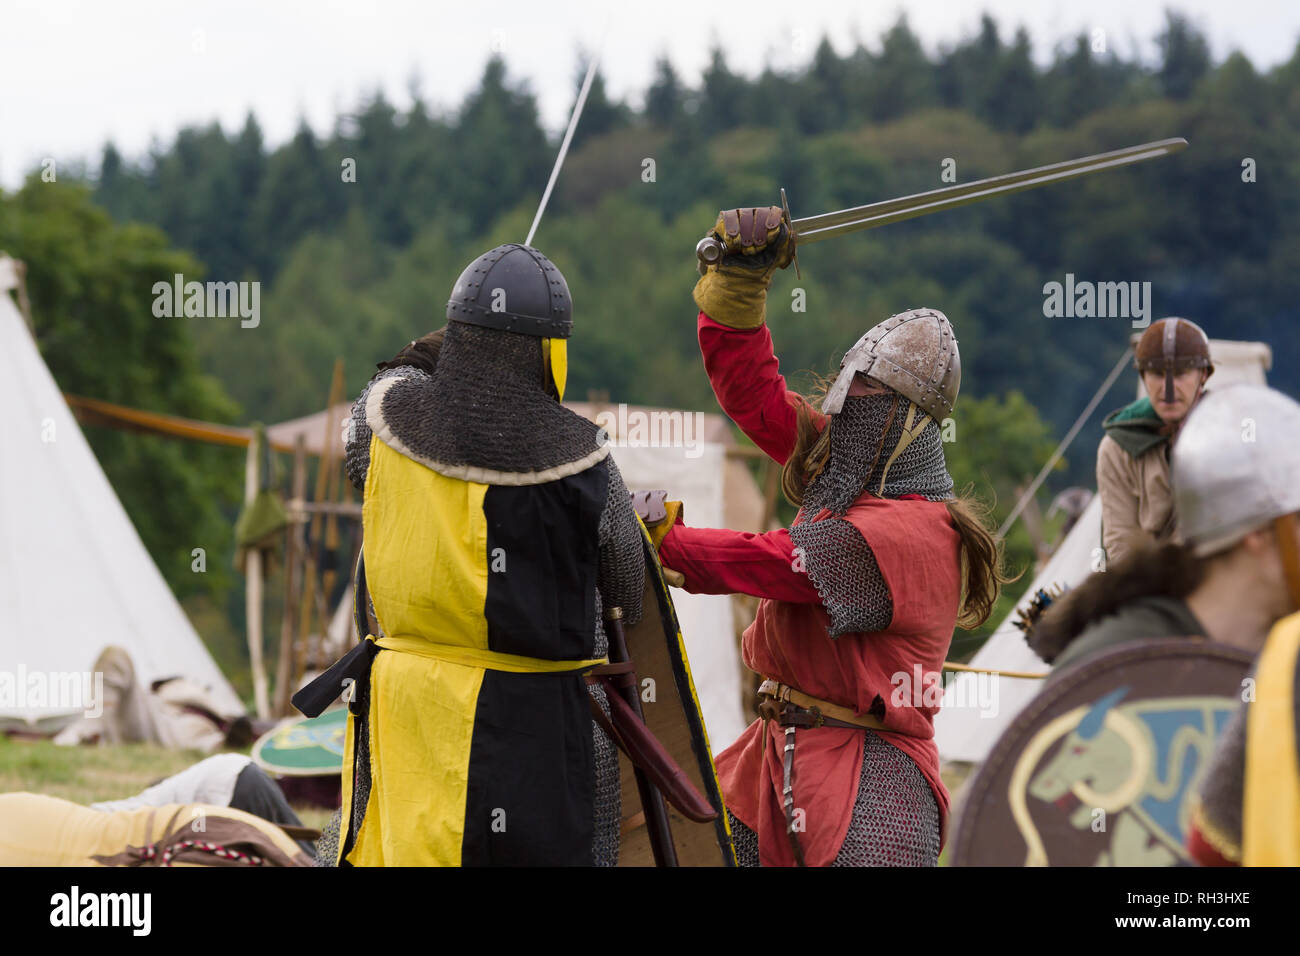 Mittelalterliche Re-enactors gekleidet in Rüstung und Kostüme des 12. Jahrhunderts ausgestattet, mit Schwertern und Rüstungen nachgespielt Bekämpfung des Zeitraums Stockfoto